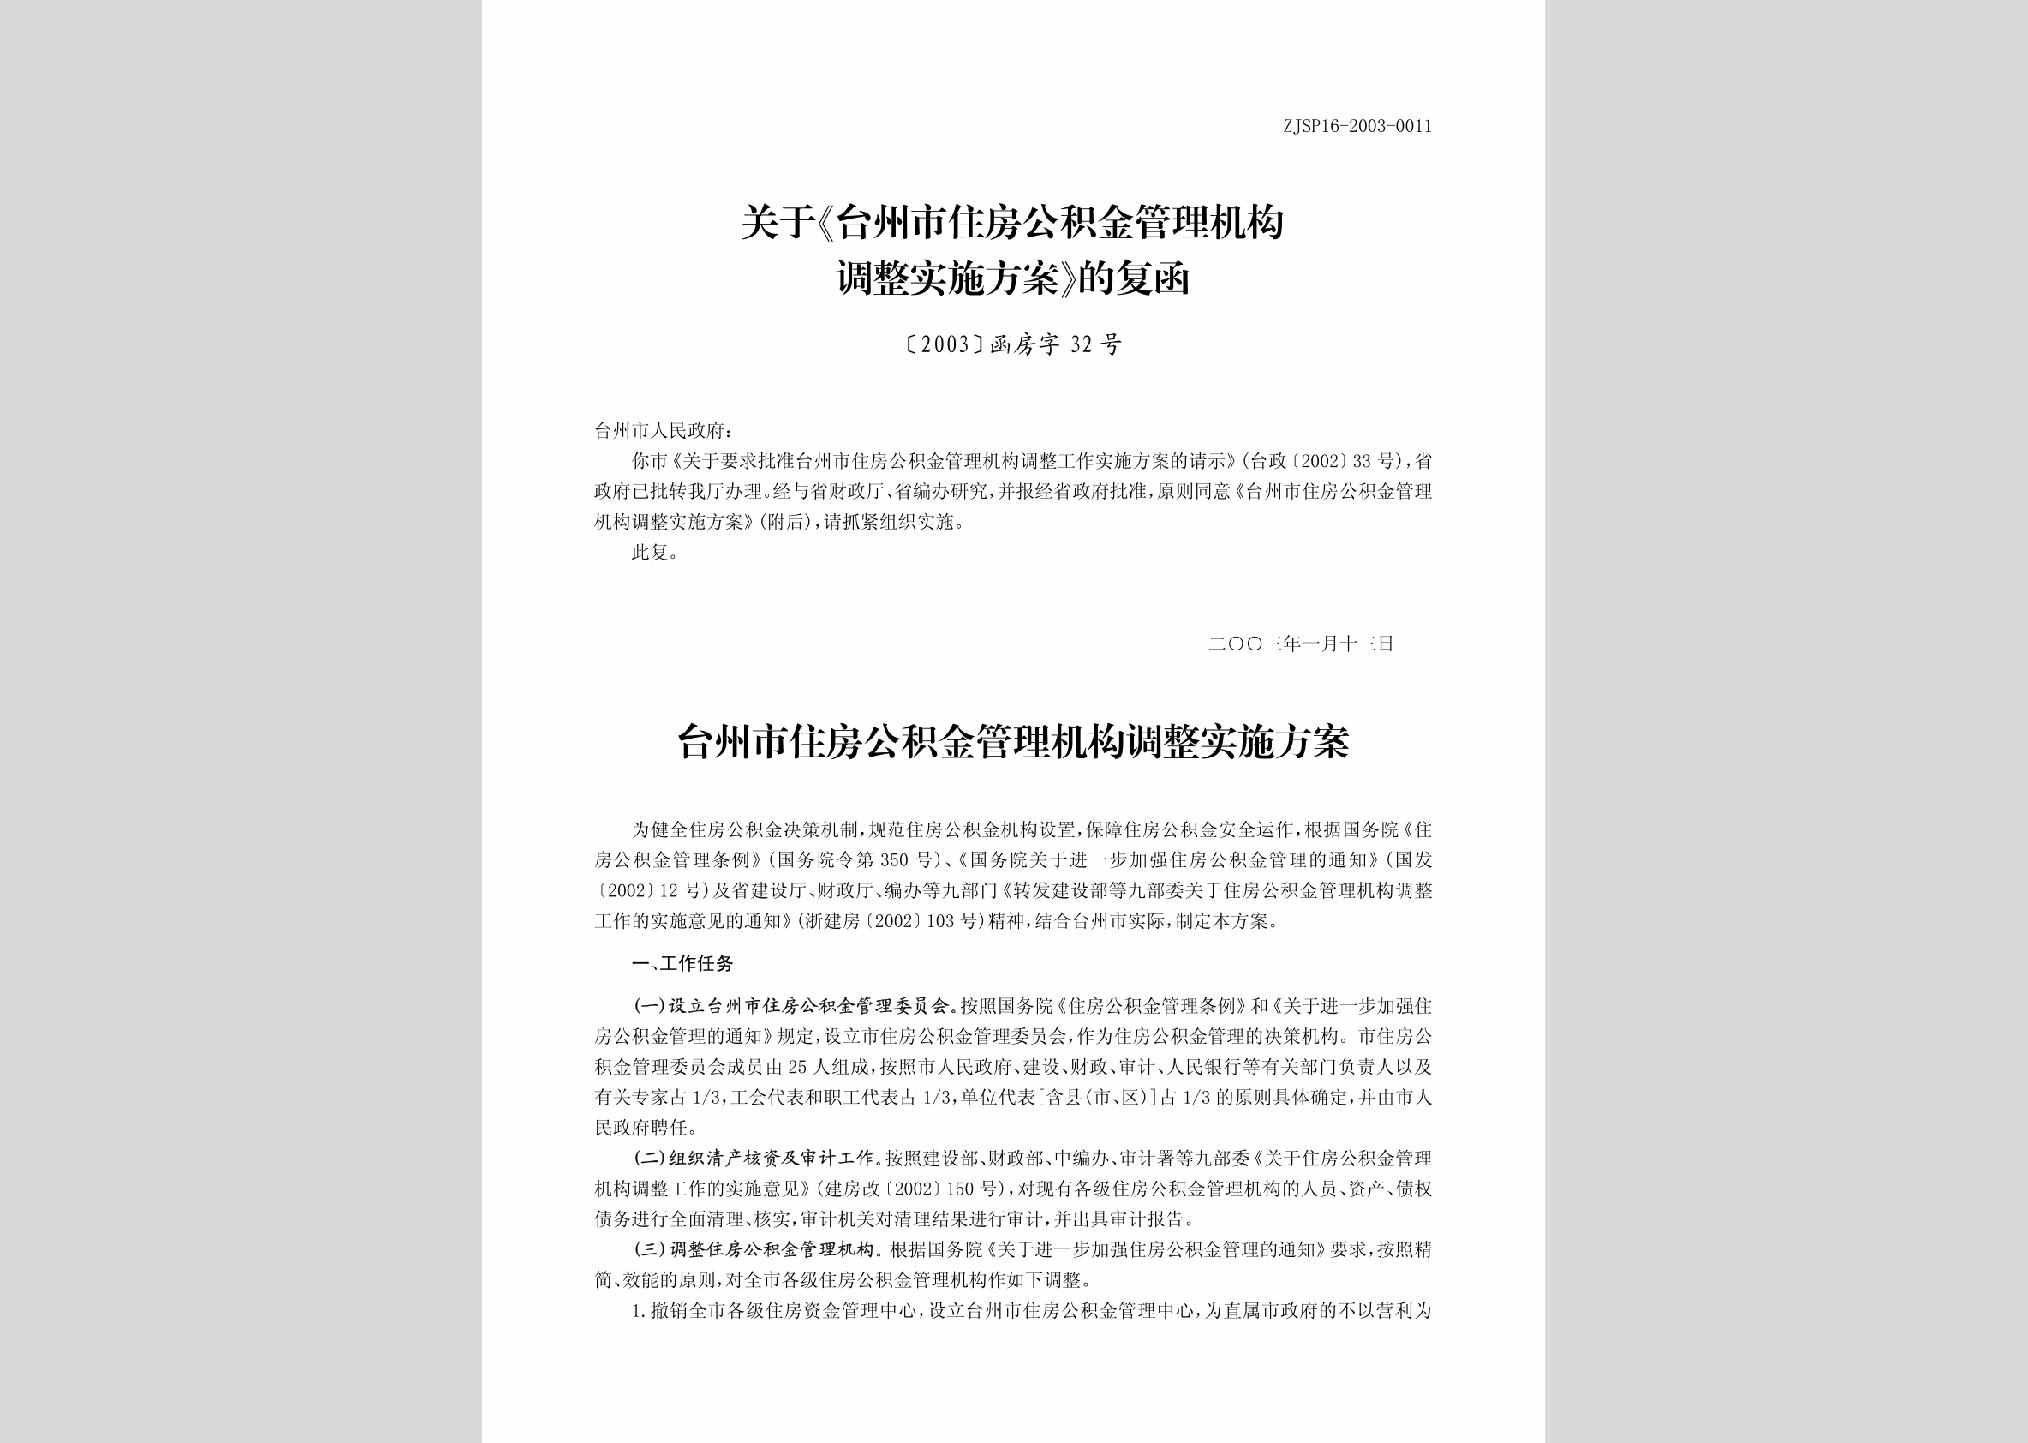 [2003]函房字32号：关于《台州市住房公积金管理机构调整实施方案》的通知